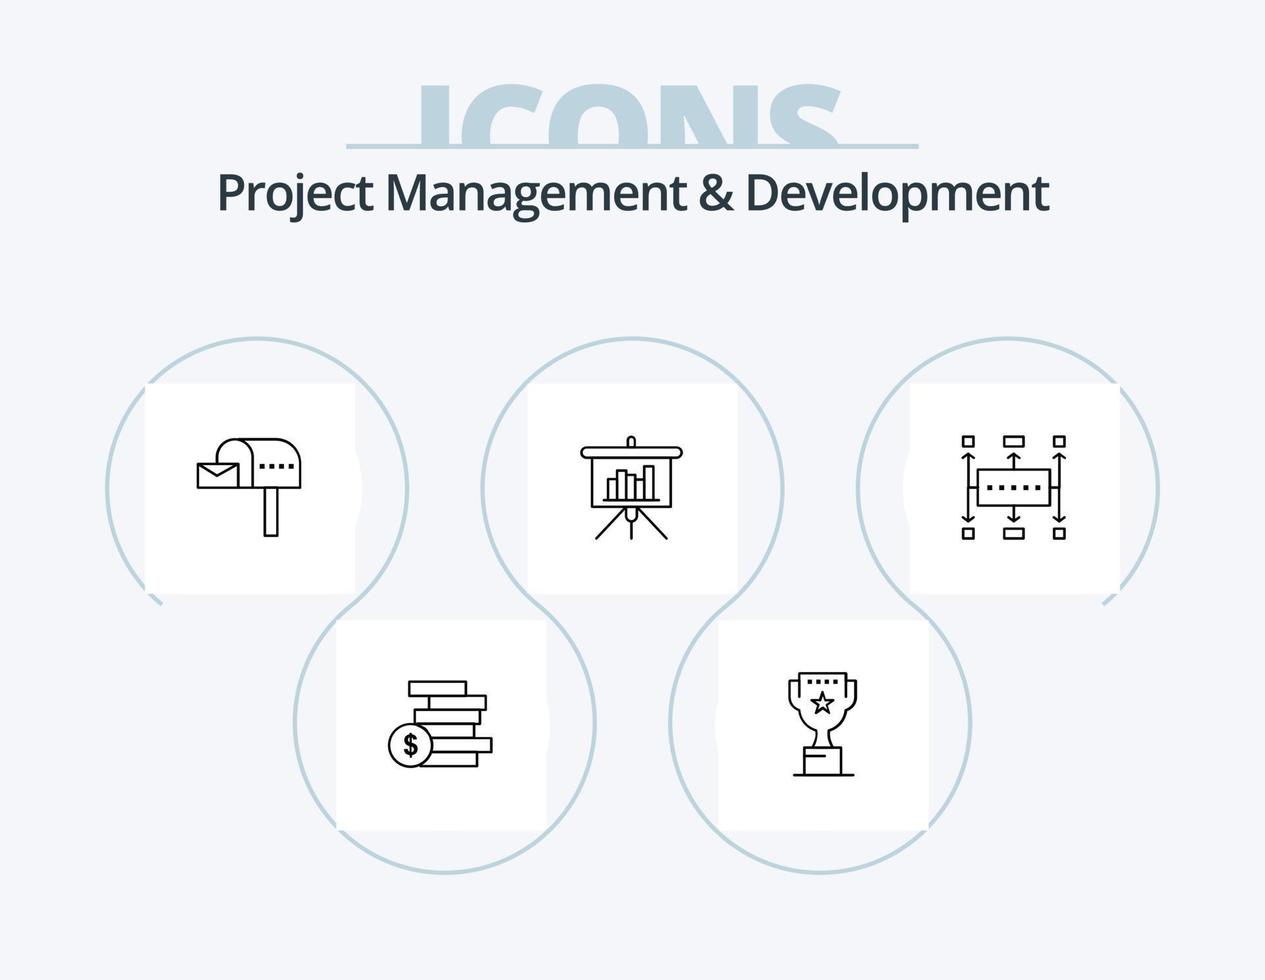 progetto gestione e sviluppo linea icona imballare 5 icona design. rapporto. finanziario. ricerca. attività commerciale. Aperto scatola vettore